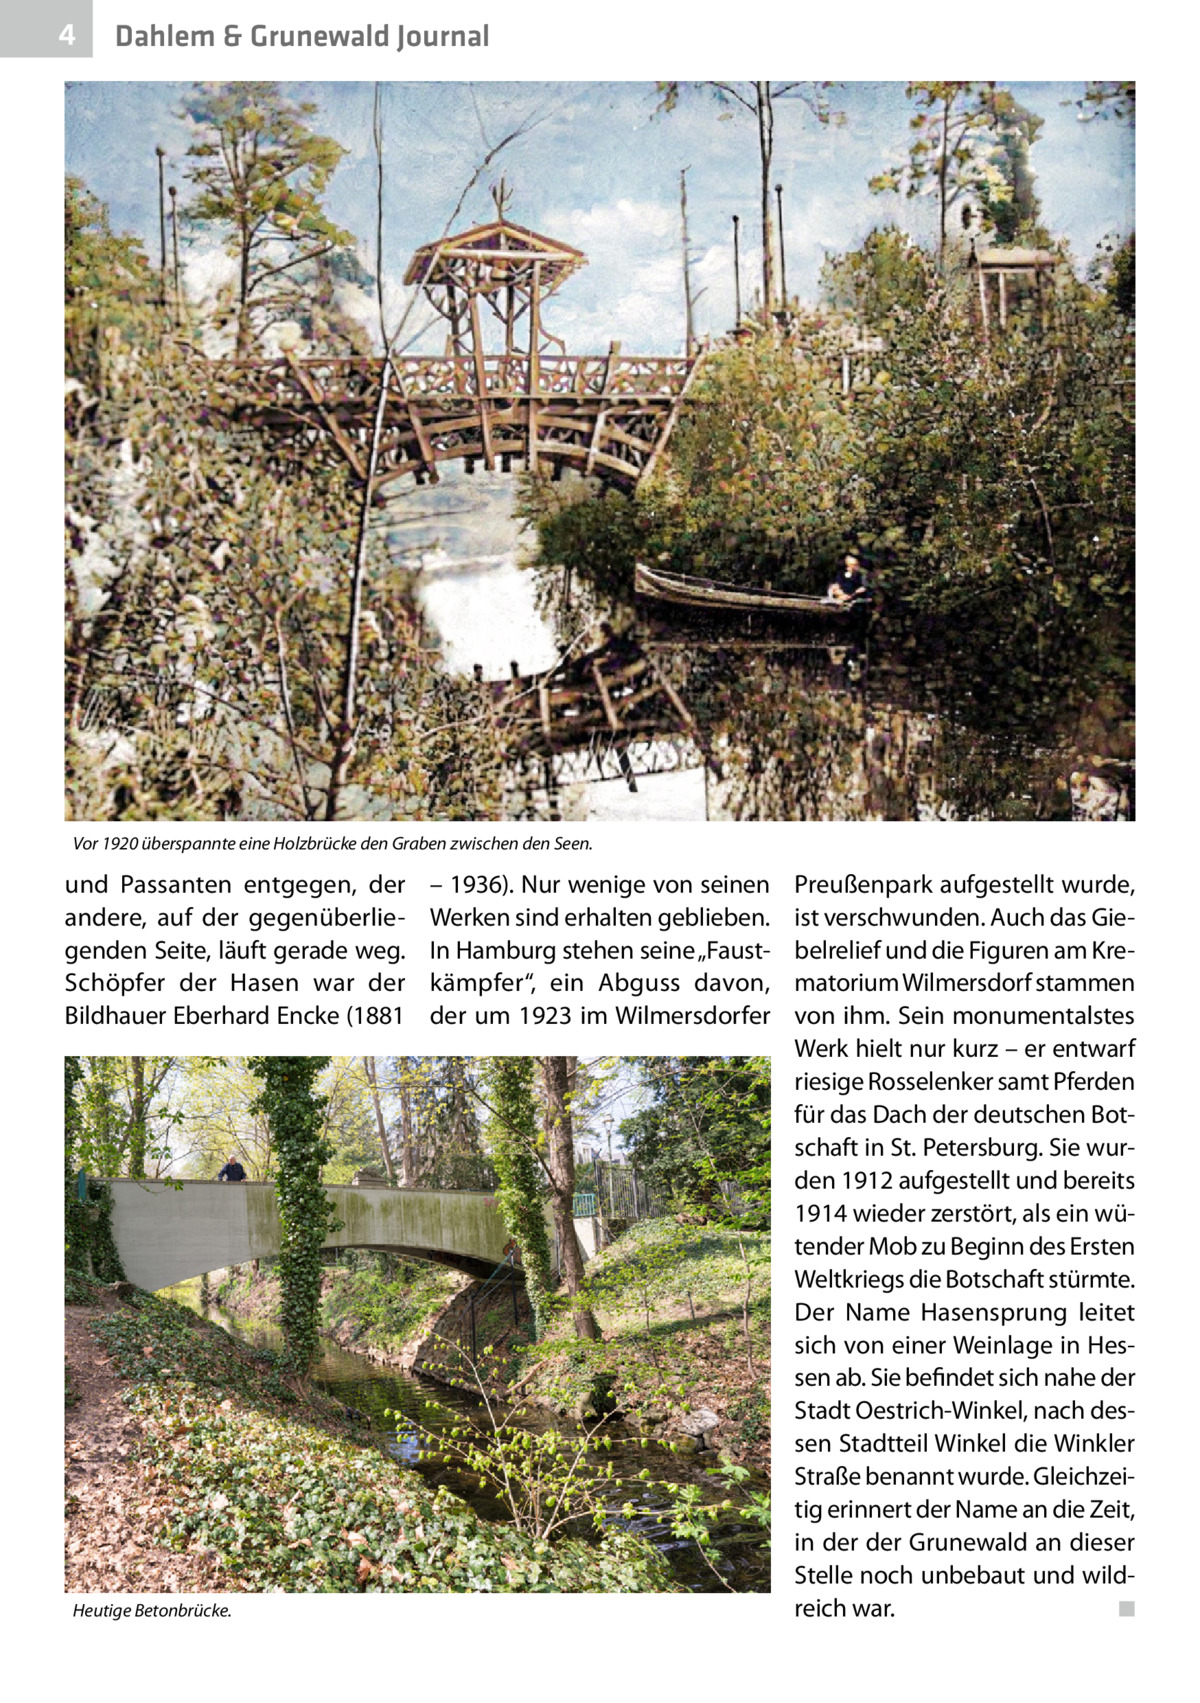 4  Dahlem & Grunewald Journal  Vor 1920 überspannte eine Holzbrücke den Graben zwischen den Seen.  und Passanten entgegen, der andere, auf der gegenüberliegenden Seite, läuft gerade weg. Schöpfer der Hasen war der Bildhauer Eberhard Encke (1881  Heutige Betonbrücke.  – 1936). Nur wenige von seinen Werken sind erhalten geblieben. In Hamburg stehen seine „Faustkämpfer“, ein Abguss davon, der um 1923 im Wilmersdorfer  Preußenpark aufgestellt wurde, ist verschwunden. Auch das Giebelrelief und die Figuren am Krematorium Wilmersdorf stammen von ihm. Sein monumentalstes Werk hielt nur kurz – er entwarf riesige Rosselenker samt Pferden für das Dach der deutschen Botschaft in St. Petersburg. Sie wurden 1912 aufgestellt und bereits 1914 wieder zerstört, als ein wütender Mob zu Beginn des Ersten Weltkriegs die Botschaft stürmte. Der Name Hasensprung leitet sich von einer Weinlage in Hessen ab. Sie befindet sich nahe der Stadt Oestrich-Winkel, nach dessen Stadtteil Winkel die Winkler Straße benannt wurde. Gleichzeitig erinnert der Name an die Zeit, in der der Grunewald an dieser Stelle noch unbebaut und wildreich war. � ◾